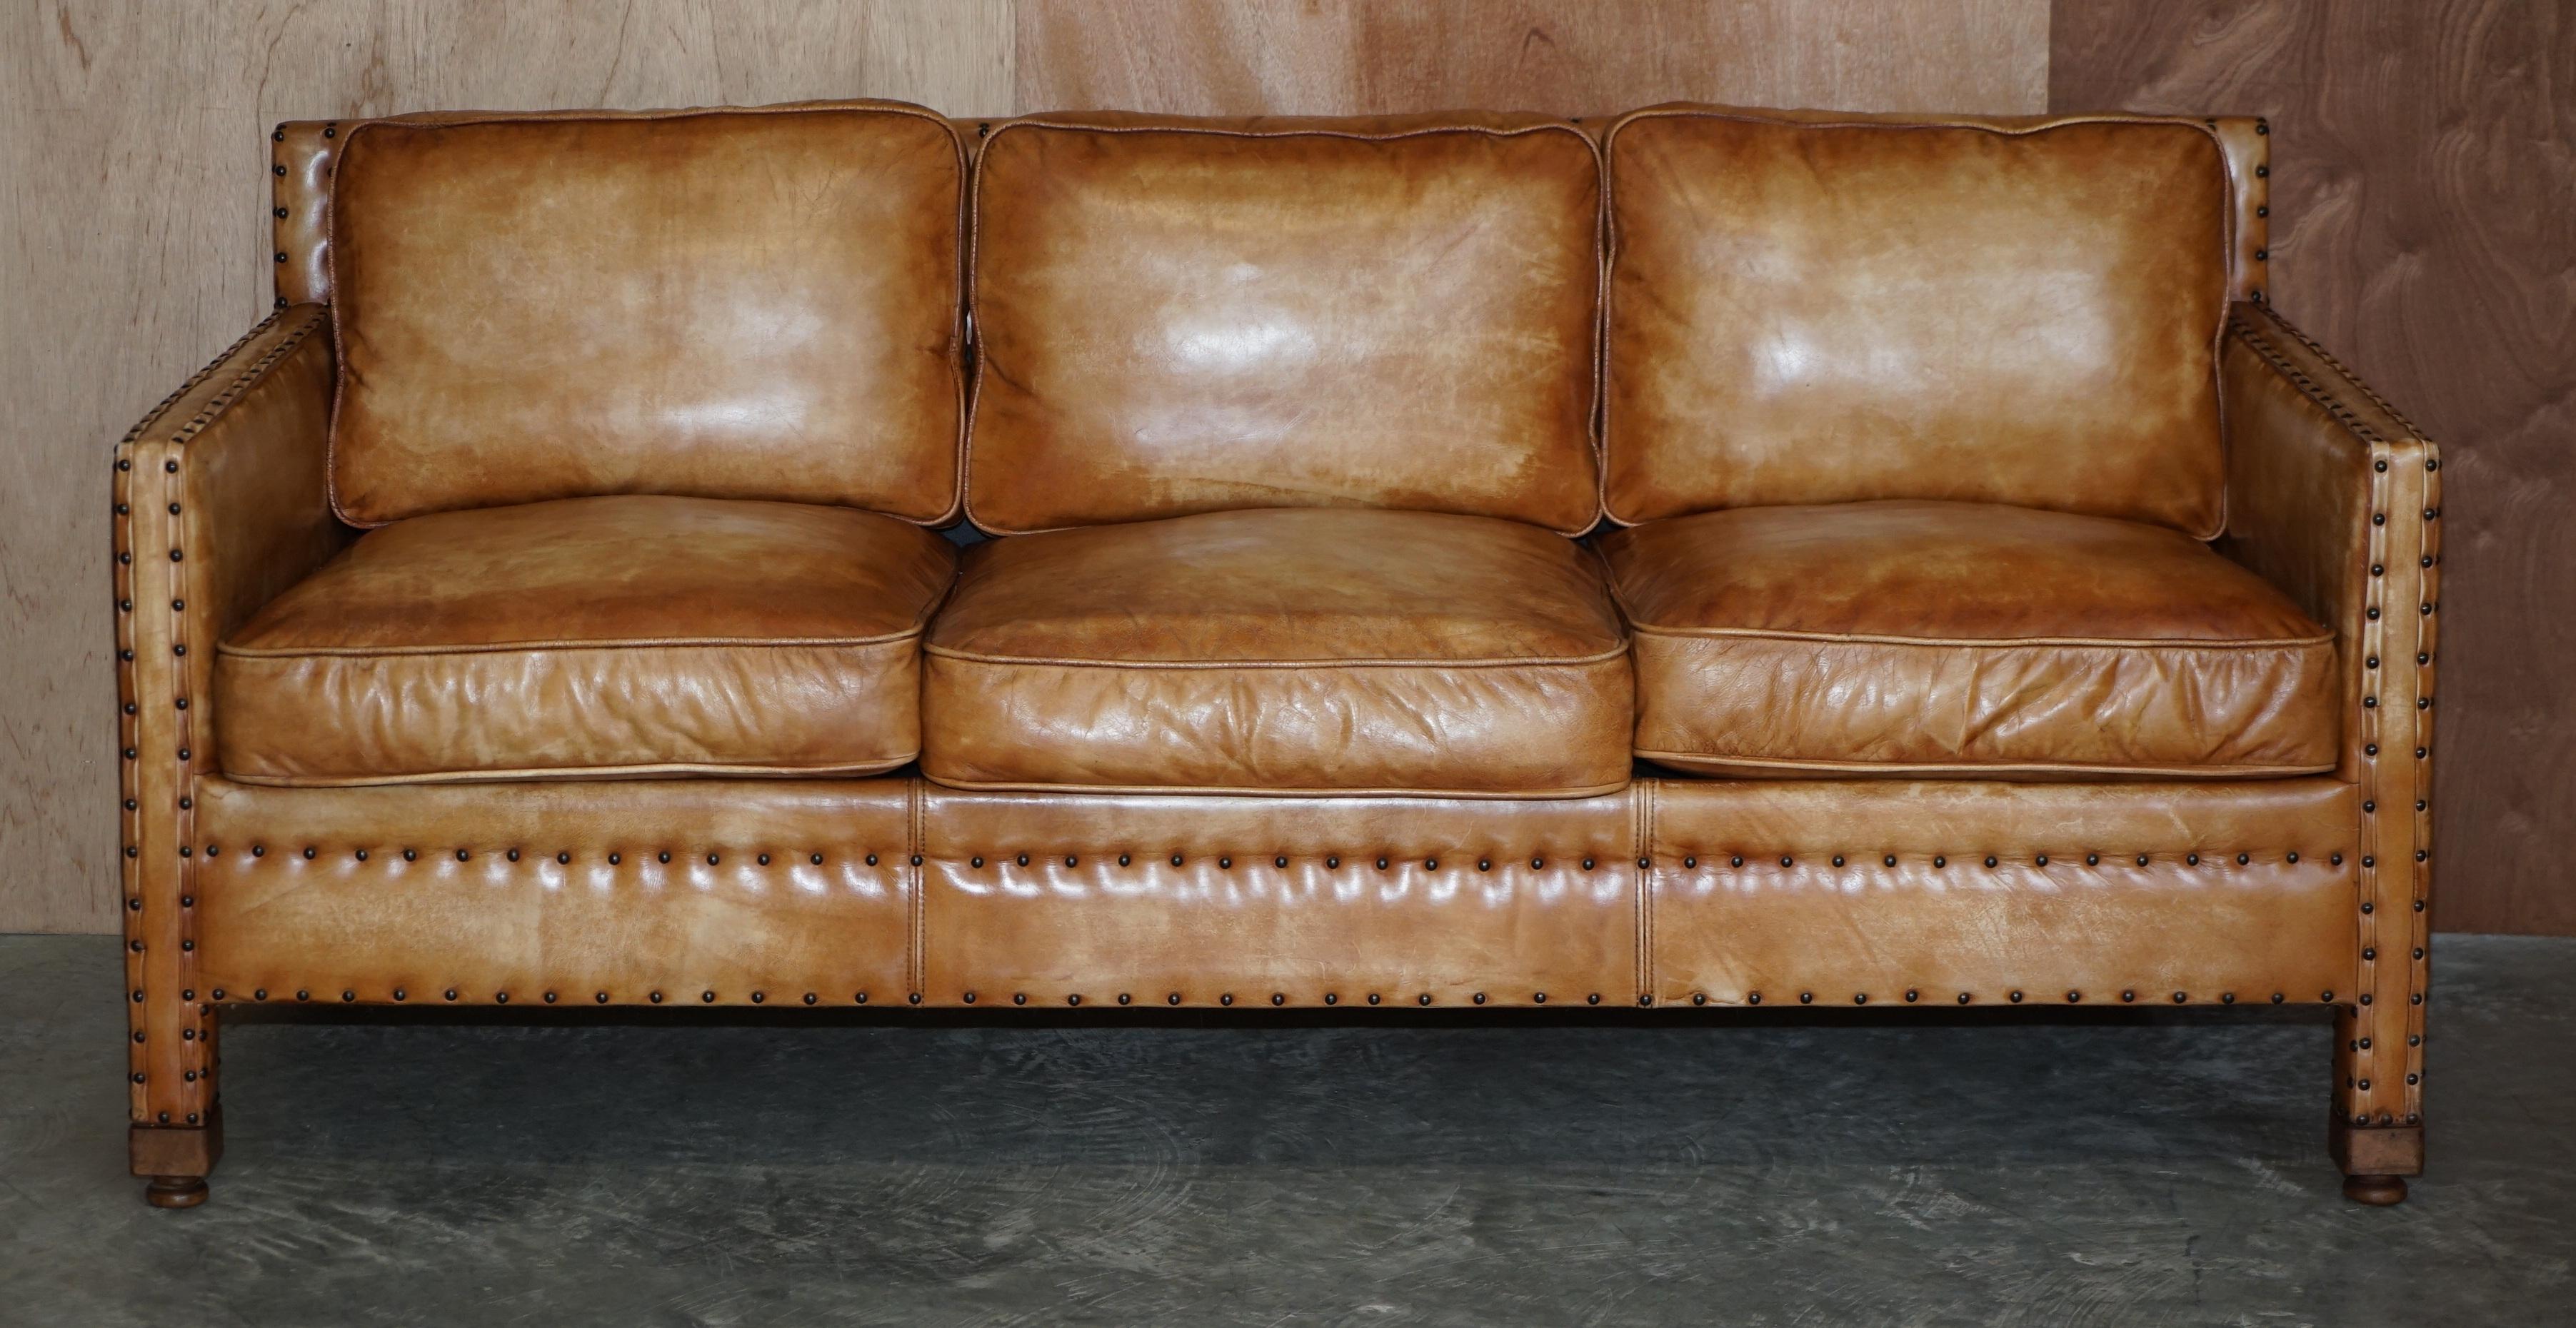 Wir freuen uns, zum Verkauf dieser schönen Hand gefärbt tan braunem Leder drei Sitz Sofa mit verzierten Nieten arbeiten alle über bieten

Das Sofa ist gut gemacht und stilvoll, das Leder ist voll Anilin Rinderhaut, so dass es einen dicken